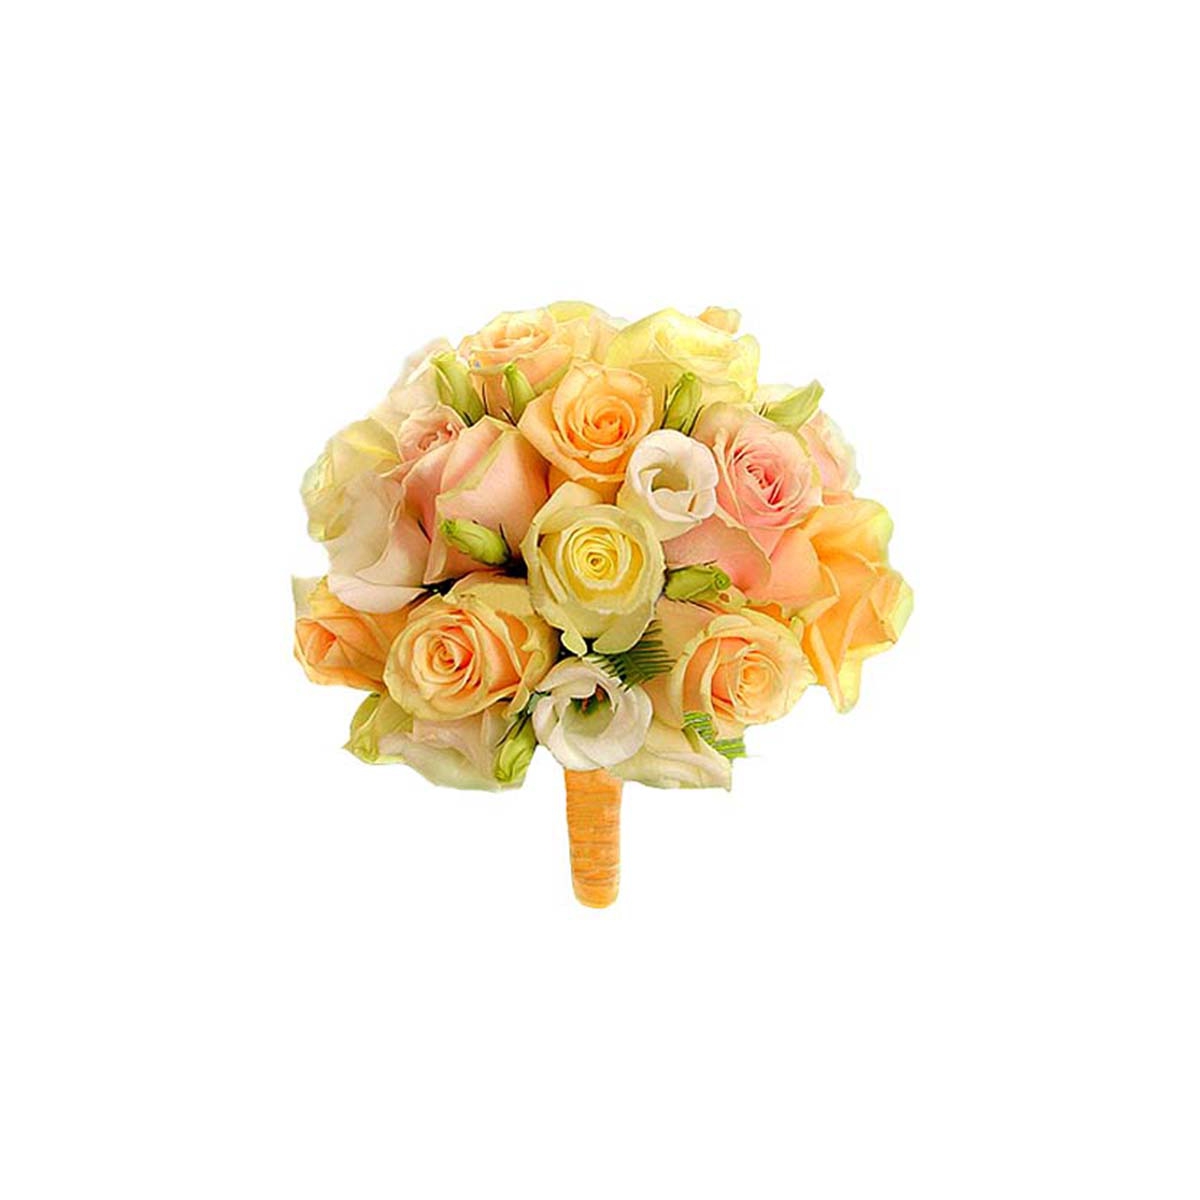 Свадебный букет из роз «Персик»